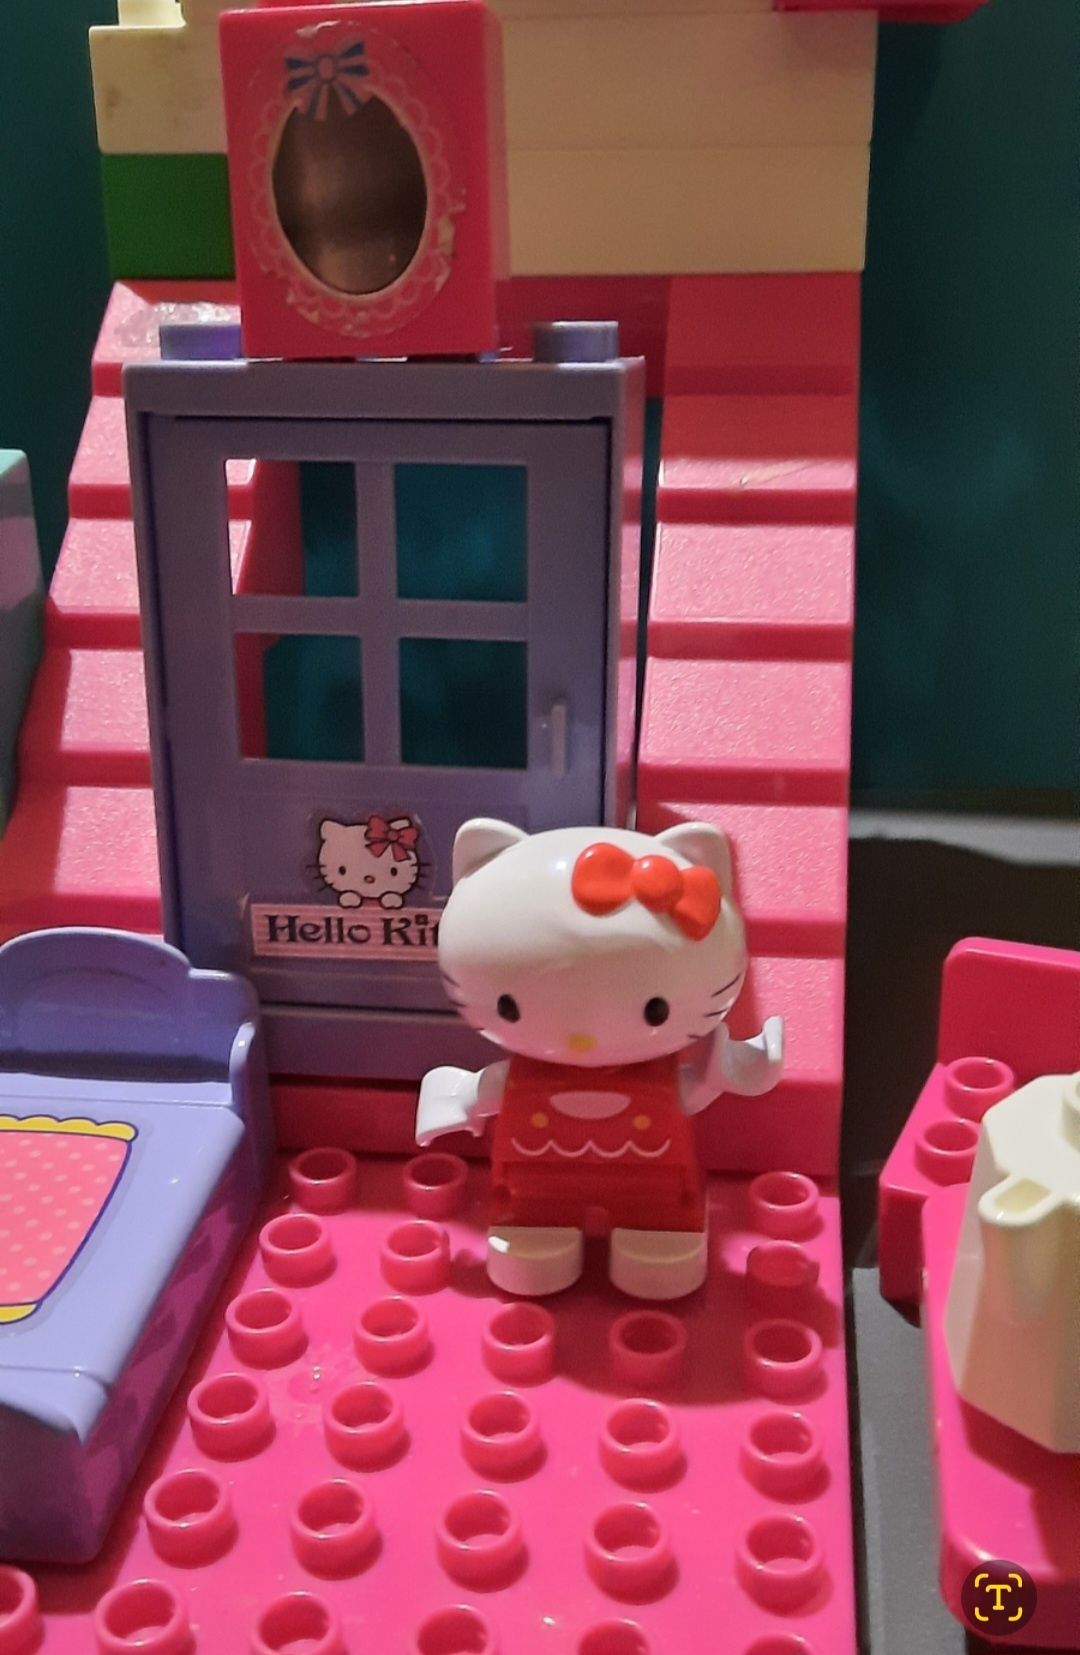 Klocki Hello Kitty